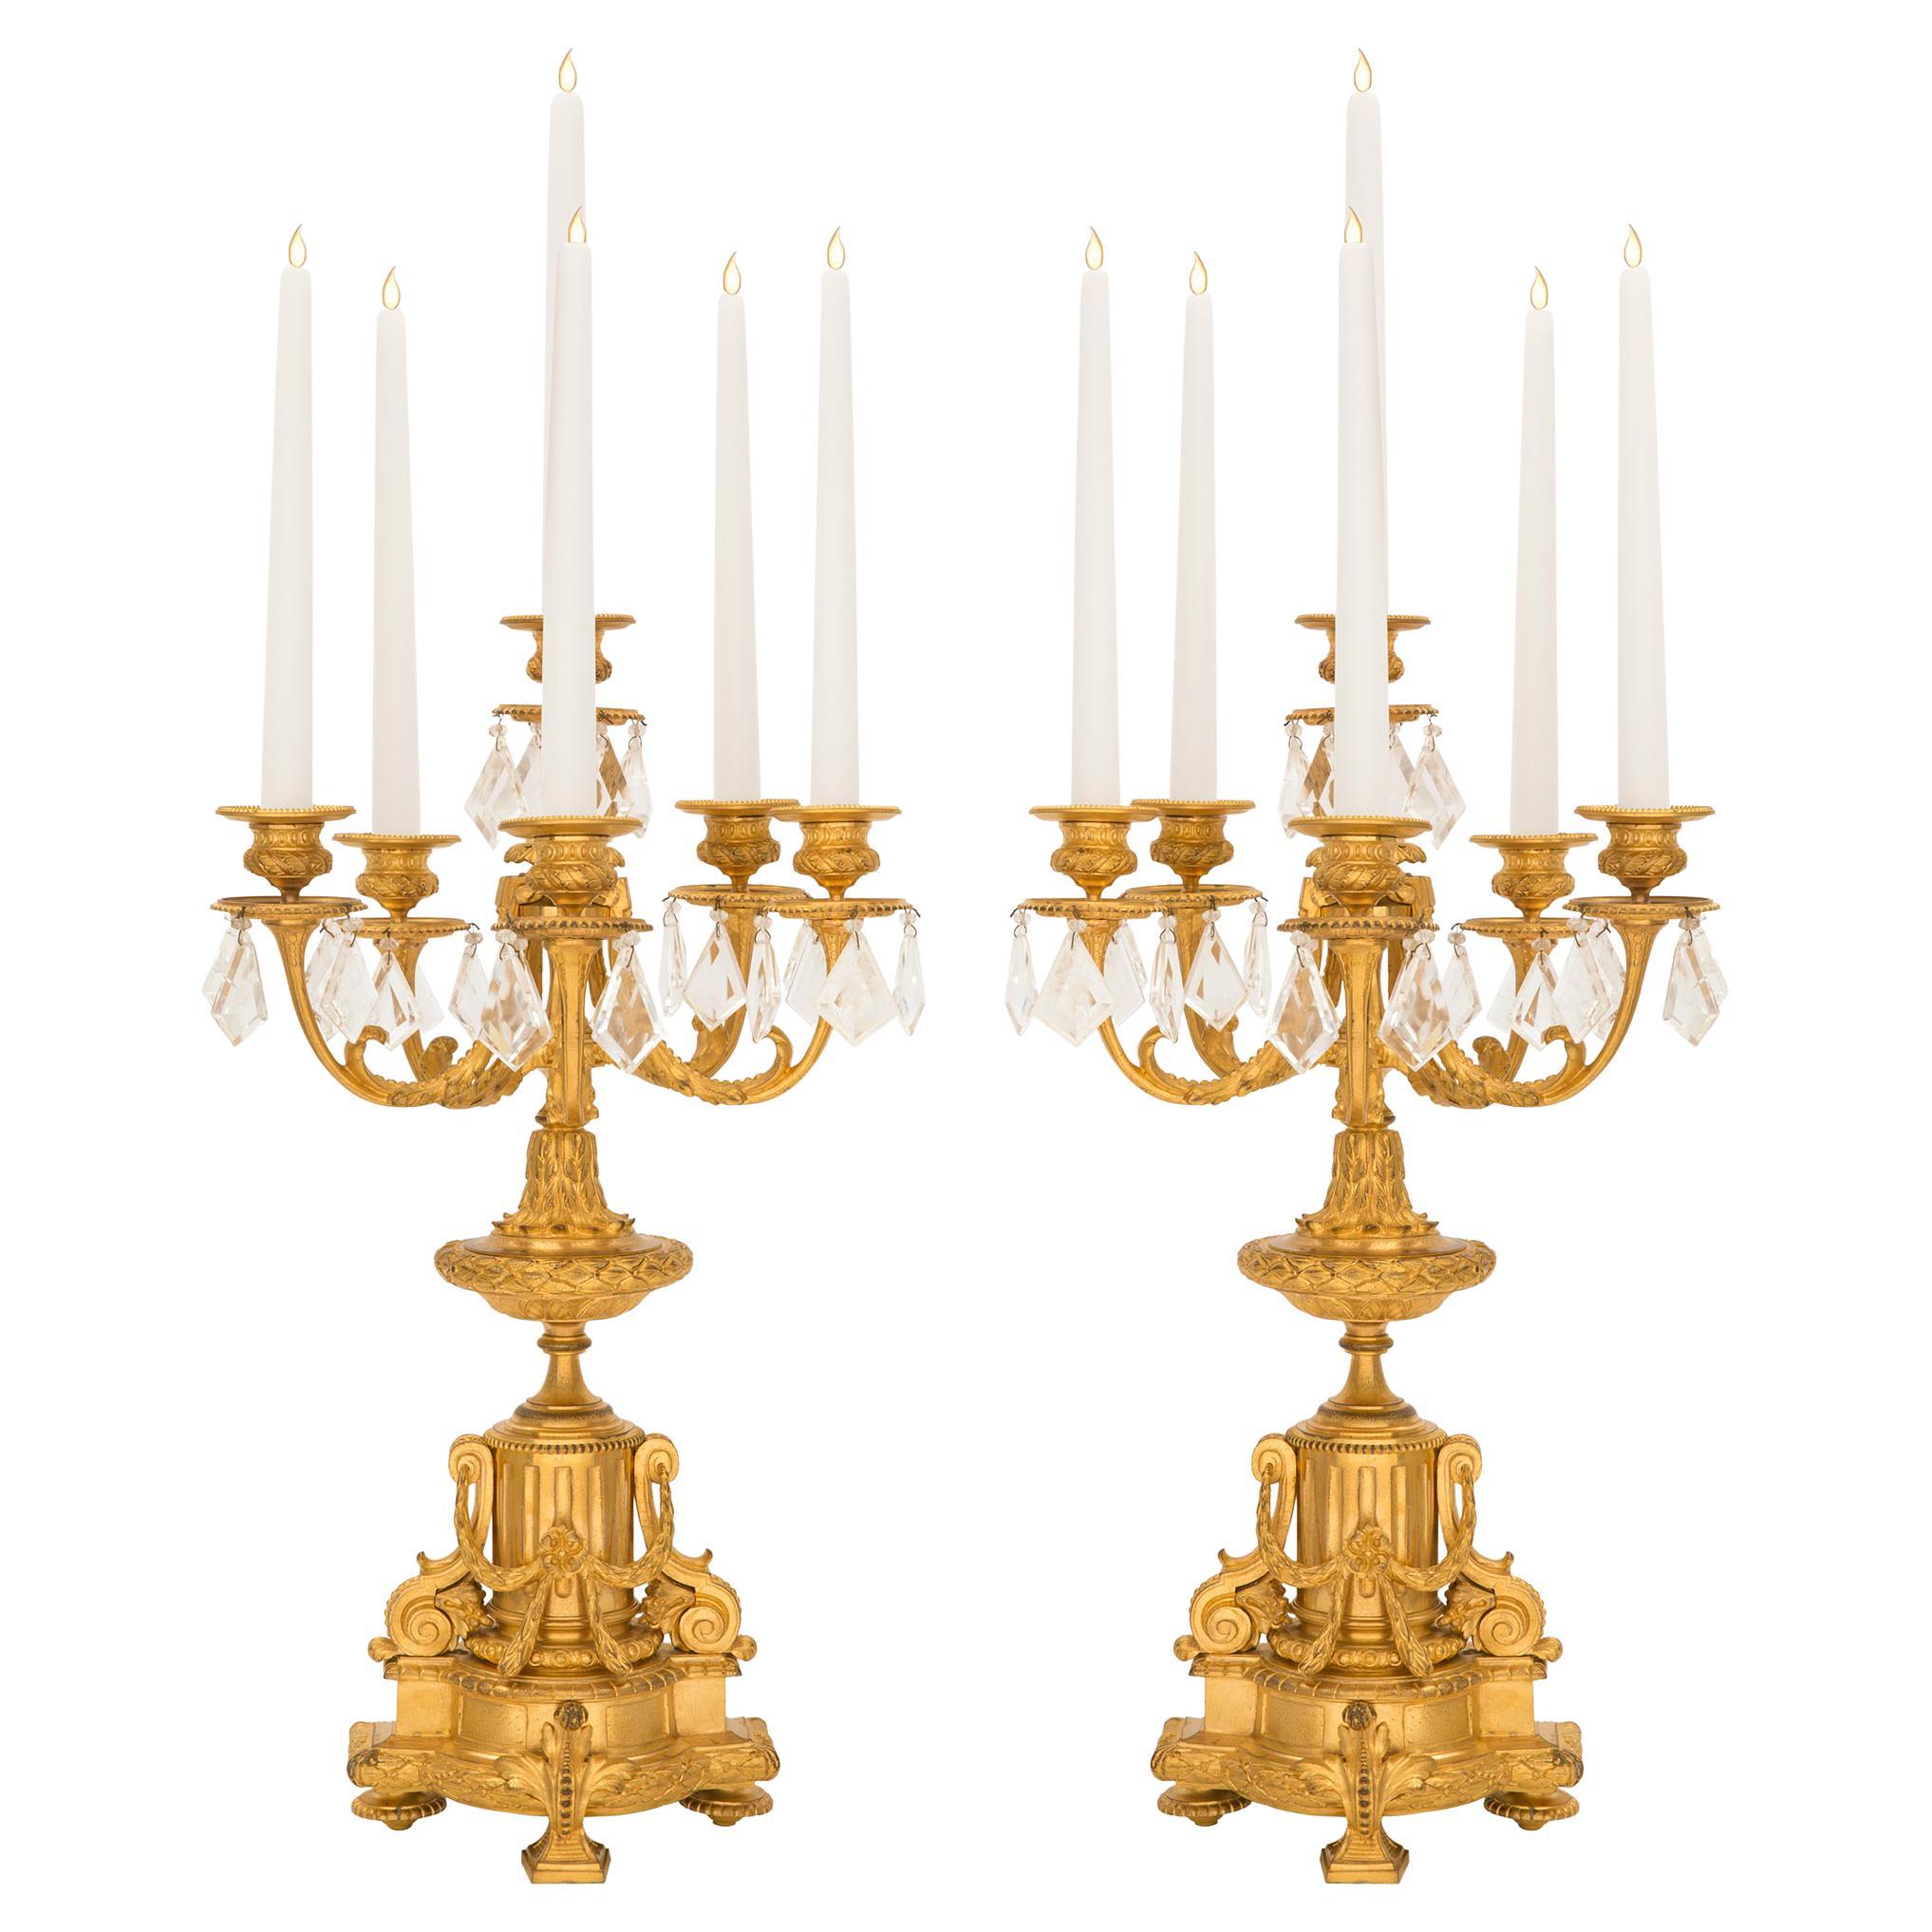 Paire de candélabres à cinq bras de style Louis XVI français du milieu du XIXe siècle